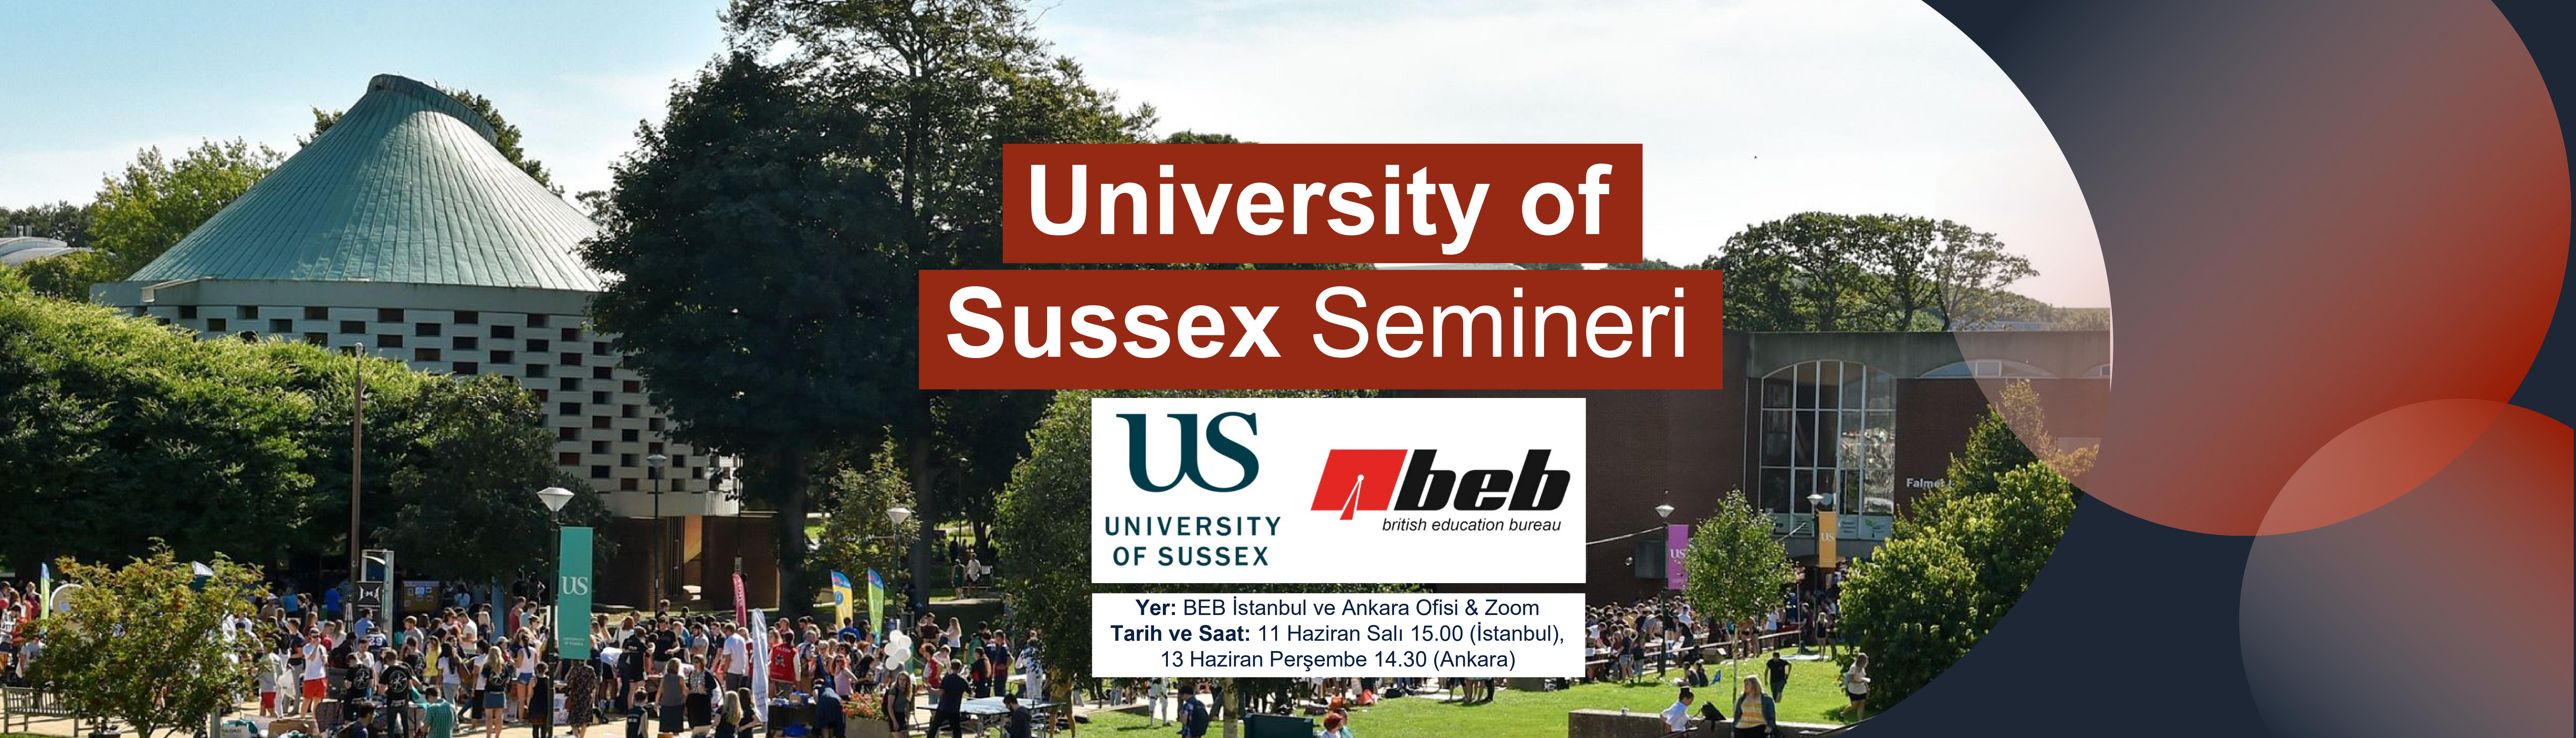 BEB---University-of-Sussex-Semineri